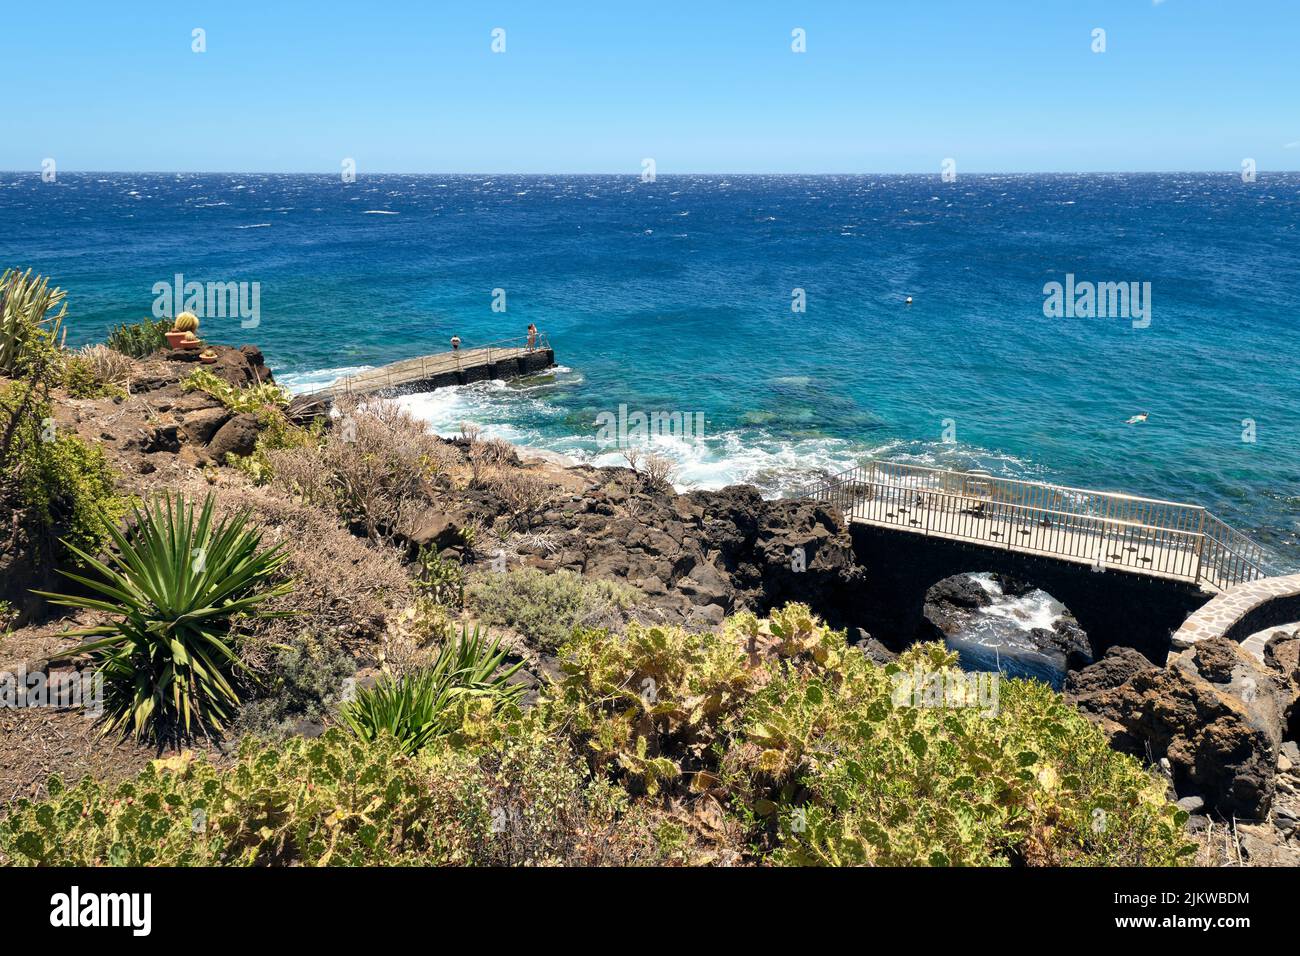 Belle côte volcanique avec mer bleue et sites de baignade ruraux à la Caleta, El Hierro, îles Canaries, Espagne. Détente au soleil. Banque D'Images